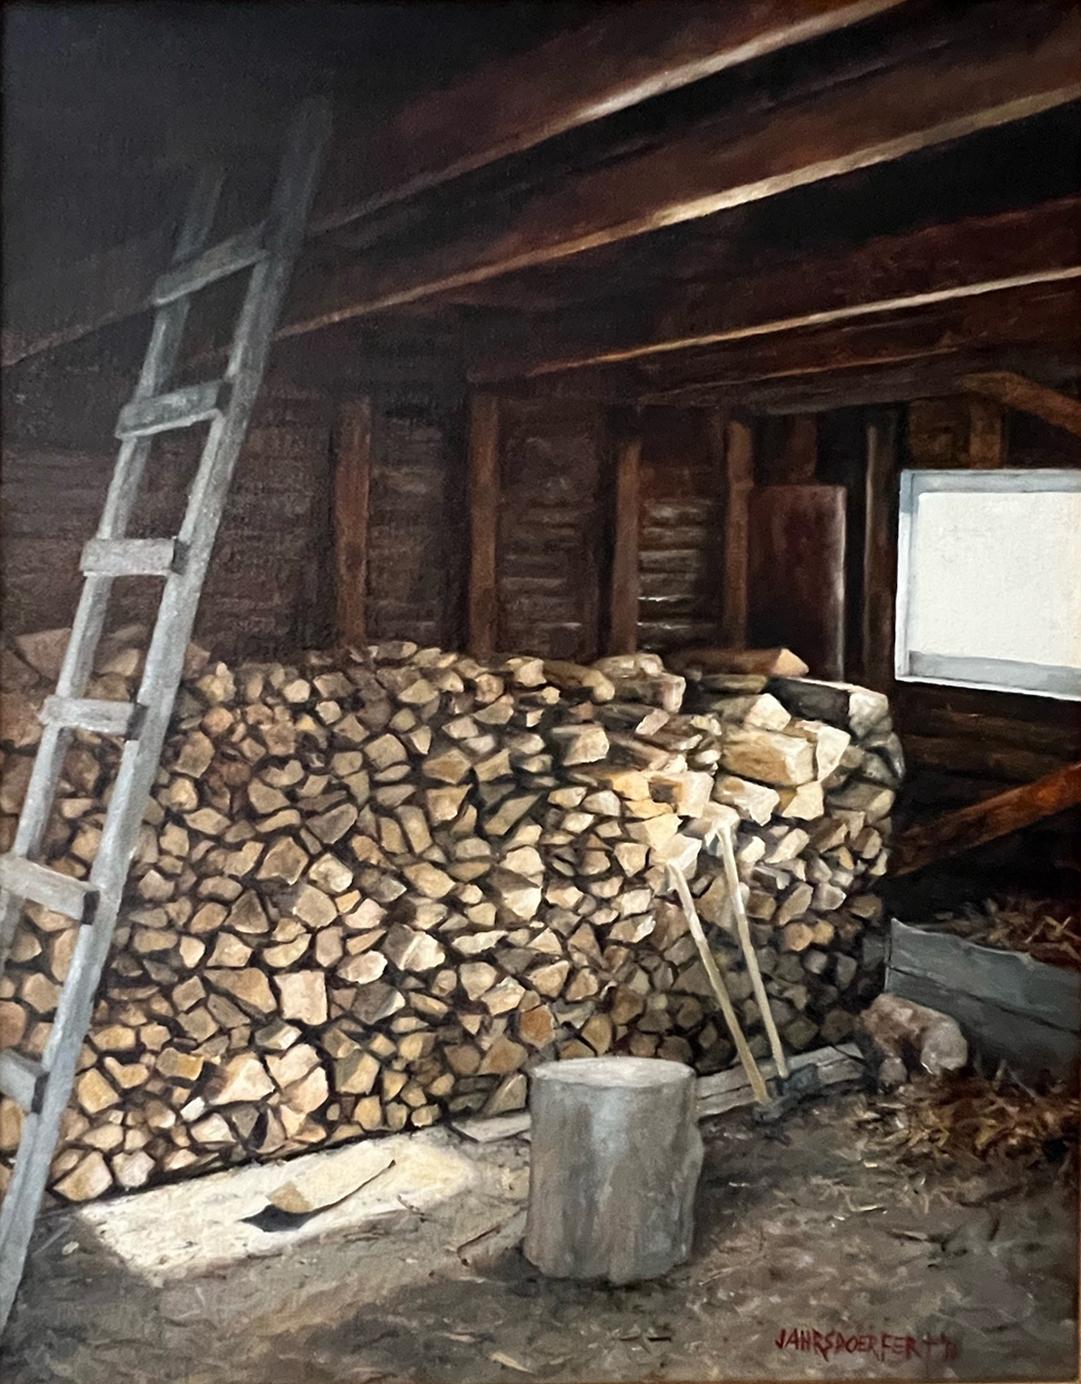 Das Werk "In the Garage" ist ein 11x15 großes Ölgemälde auf Leinwand des Künstlers James Jahrsdoerfer, das einen Blick in das Innere einer Garage in ländlicher Umgebung zeigt, die für den Winter vorbereitet und organisiert ist. Die Holzstapel für